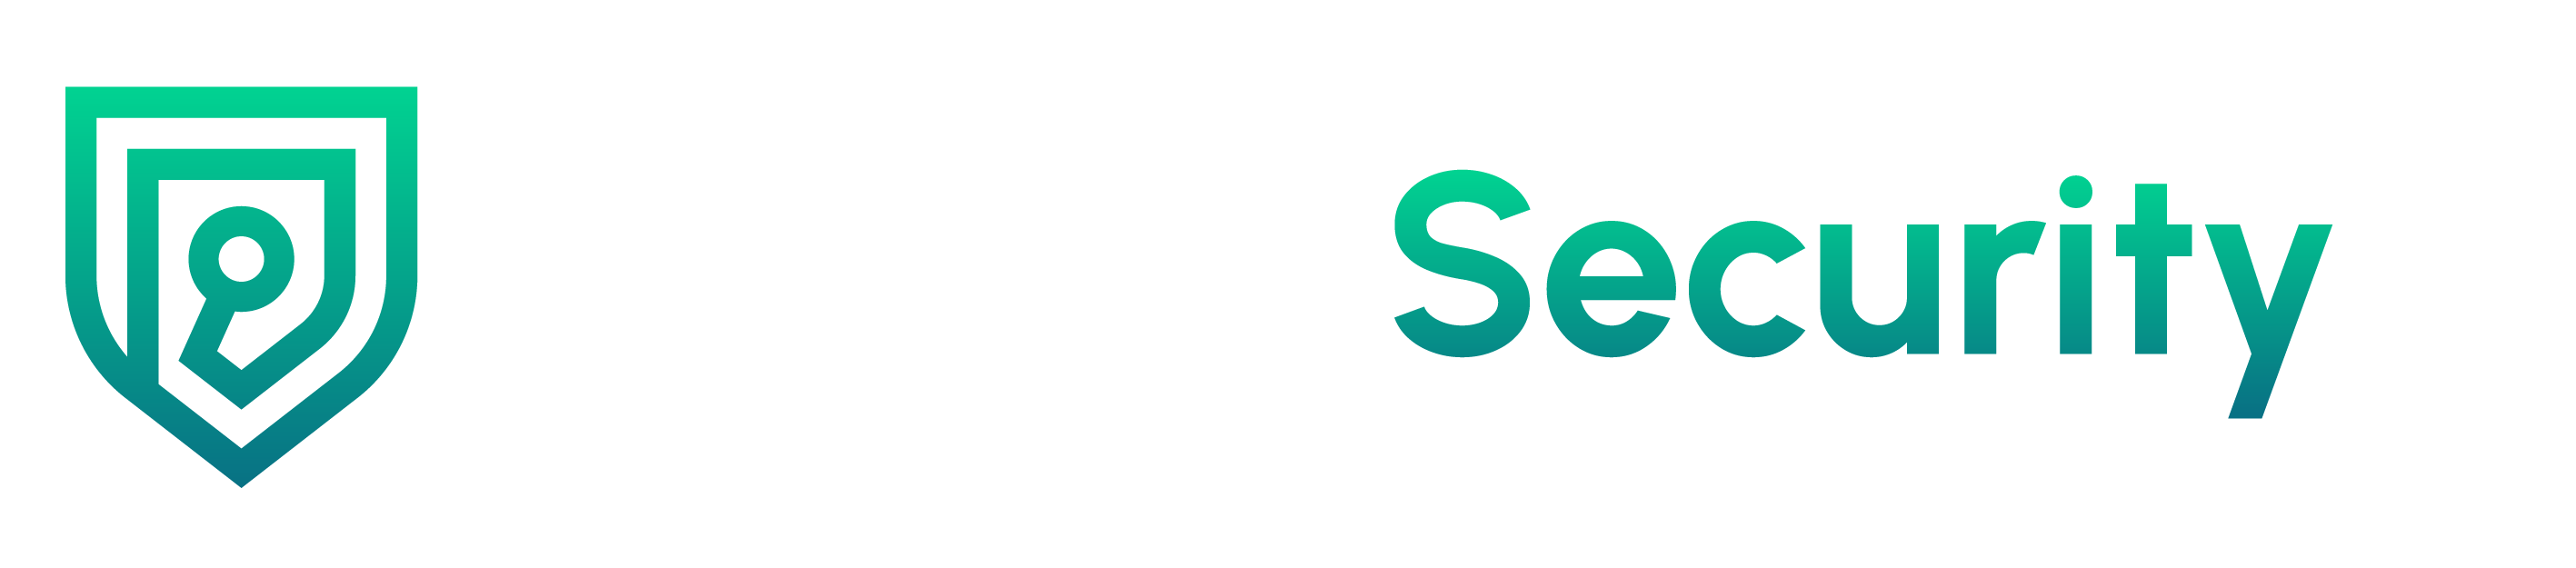 ProductSecurity.dev logo